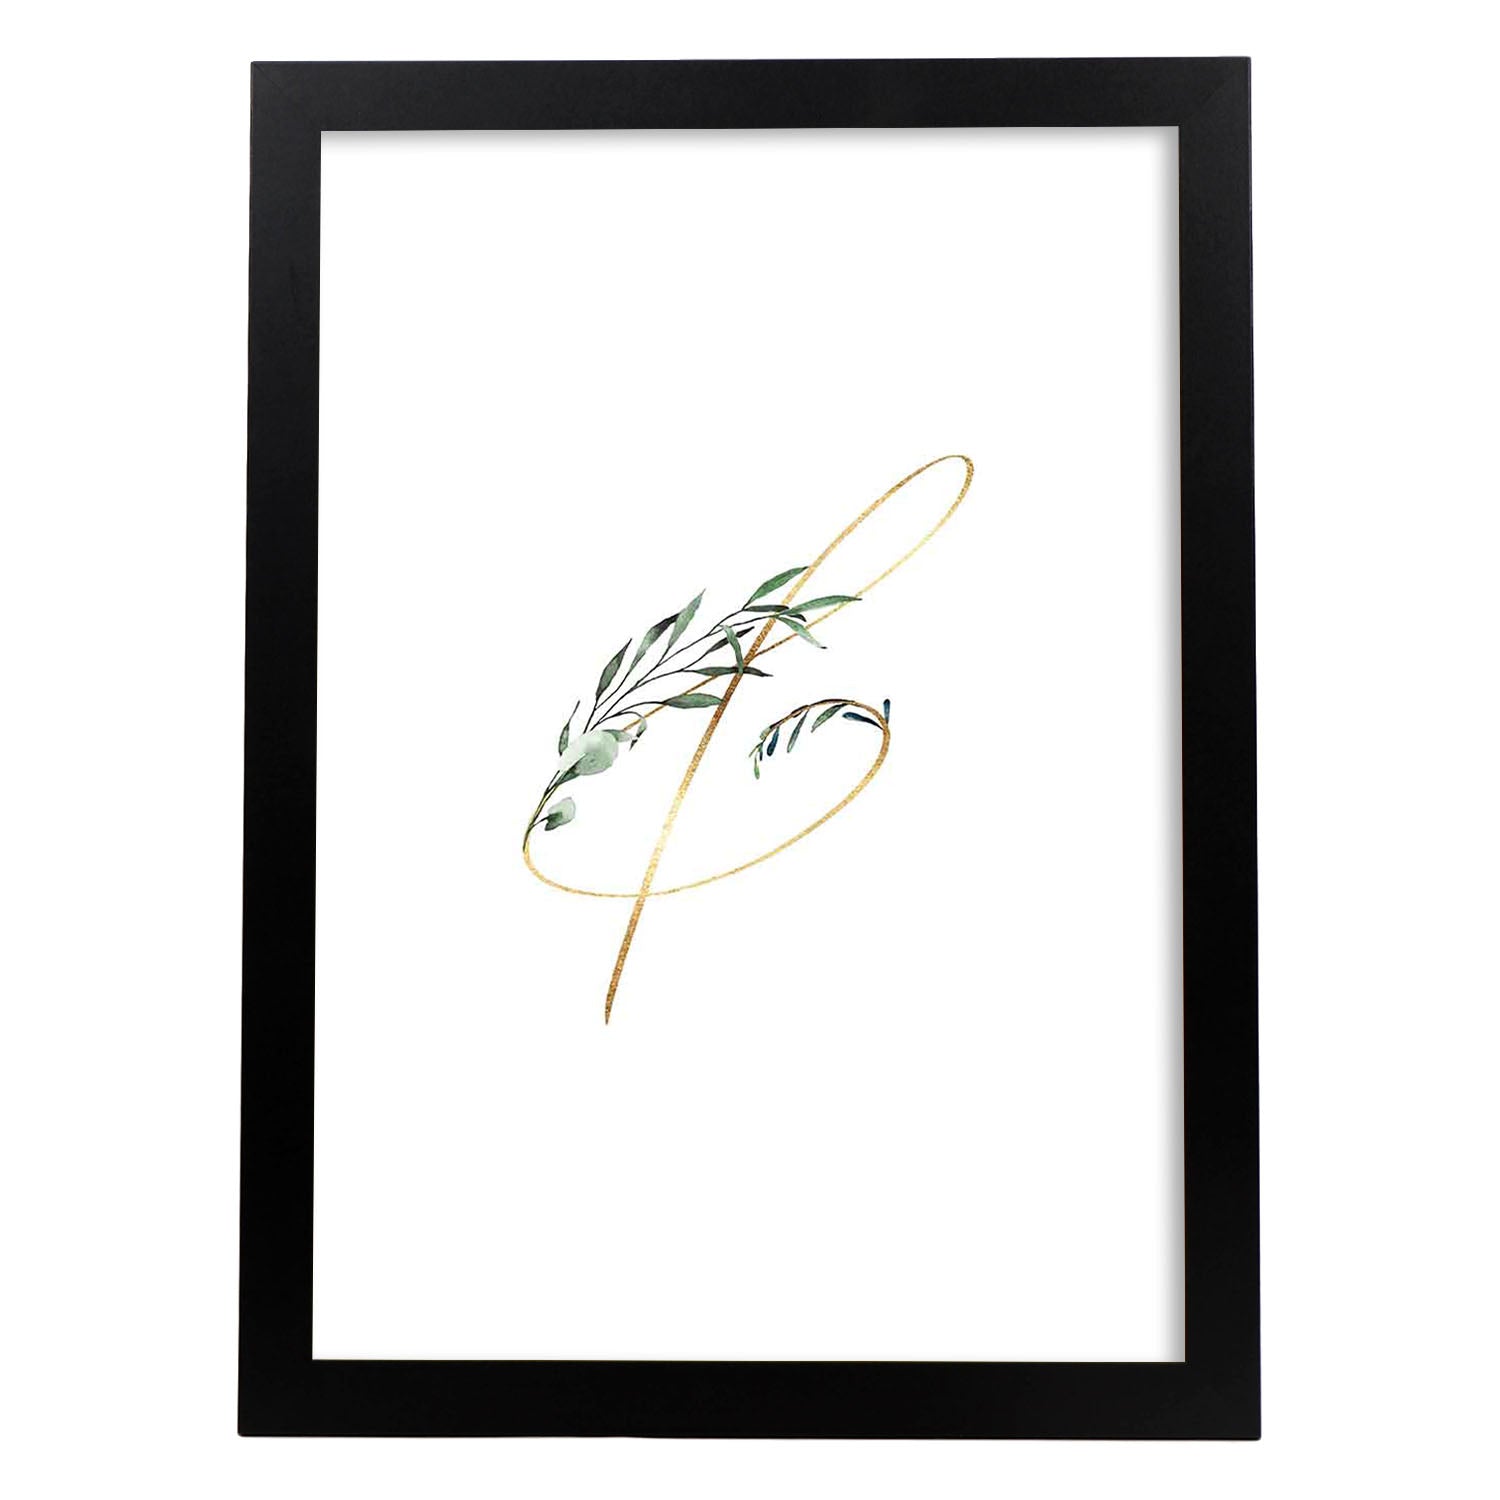 Poster de letra &. Lámina estilo Verde Fino con imágenes del alfabeto.-Artwork-Nacnic-A3-Marco Negro-Nacnic Estudio SL